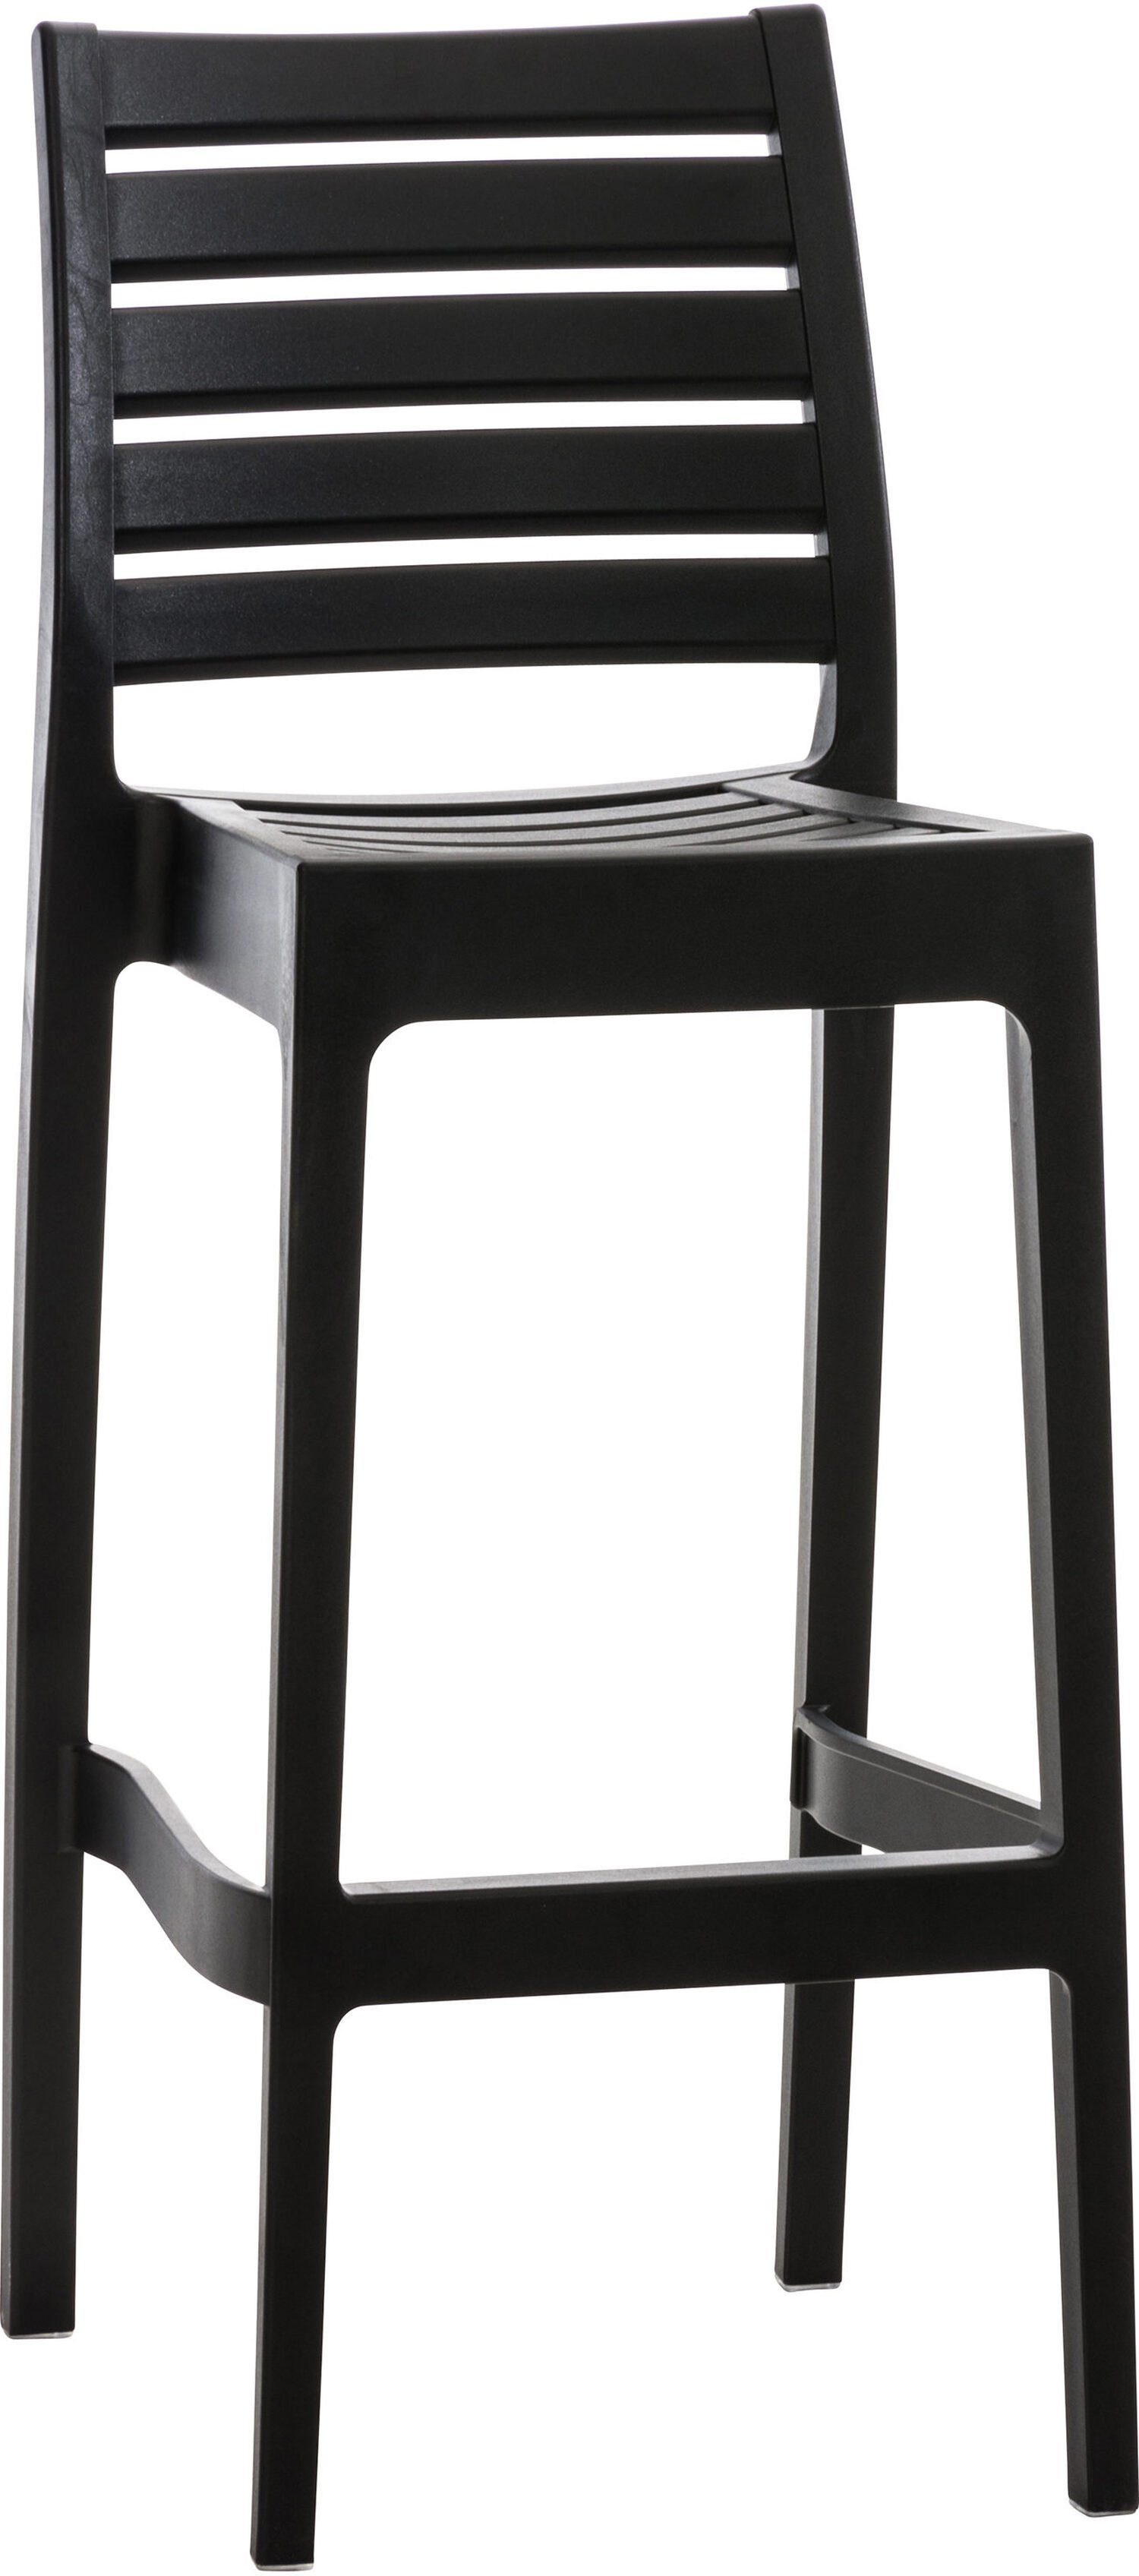 TPFLiving Barhocker Ares (mit angenehmer Fußstütze - Hocker für Theke & Küche), Gestell Kunststoff - Sitzfläche: Kunststoff Schwarz